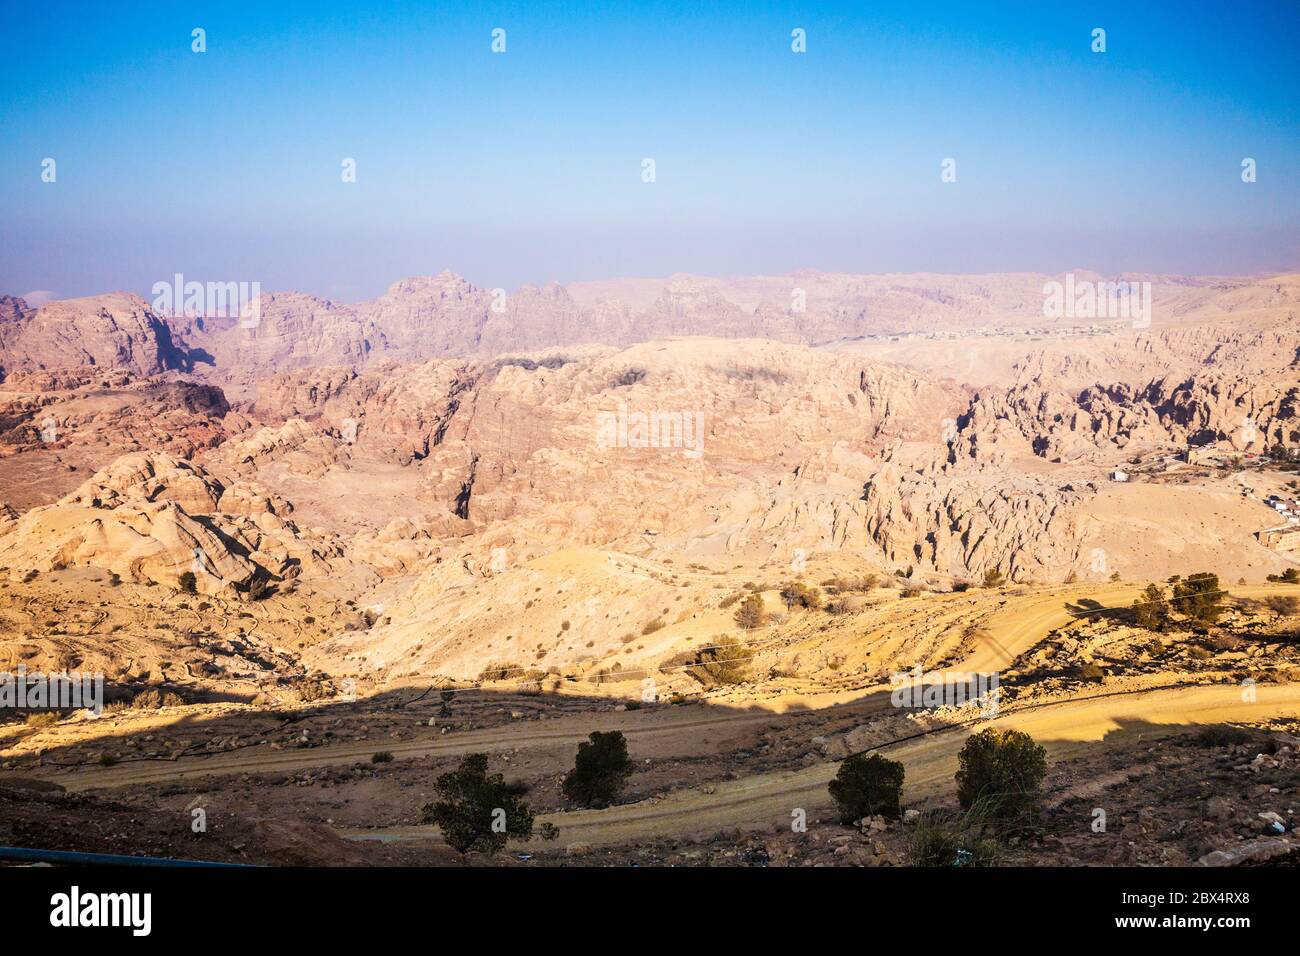 Der alten Handelsstraße, bekannt als des Königs Highway zwischen Aqaba und Petra in Jordanien. Stockfoto